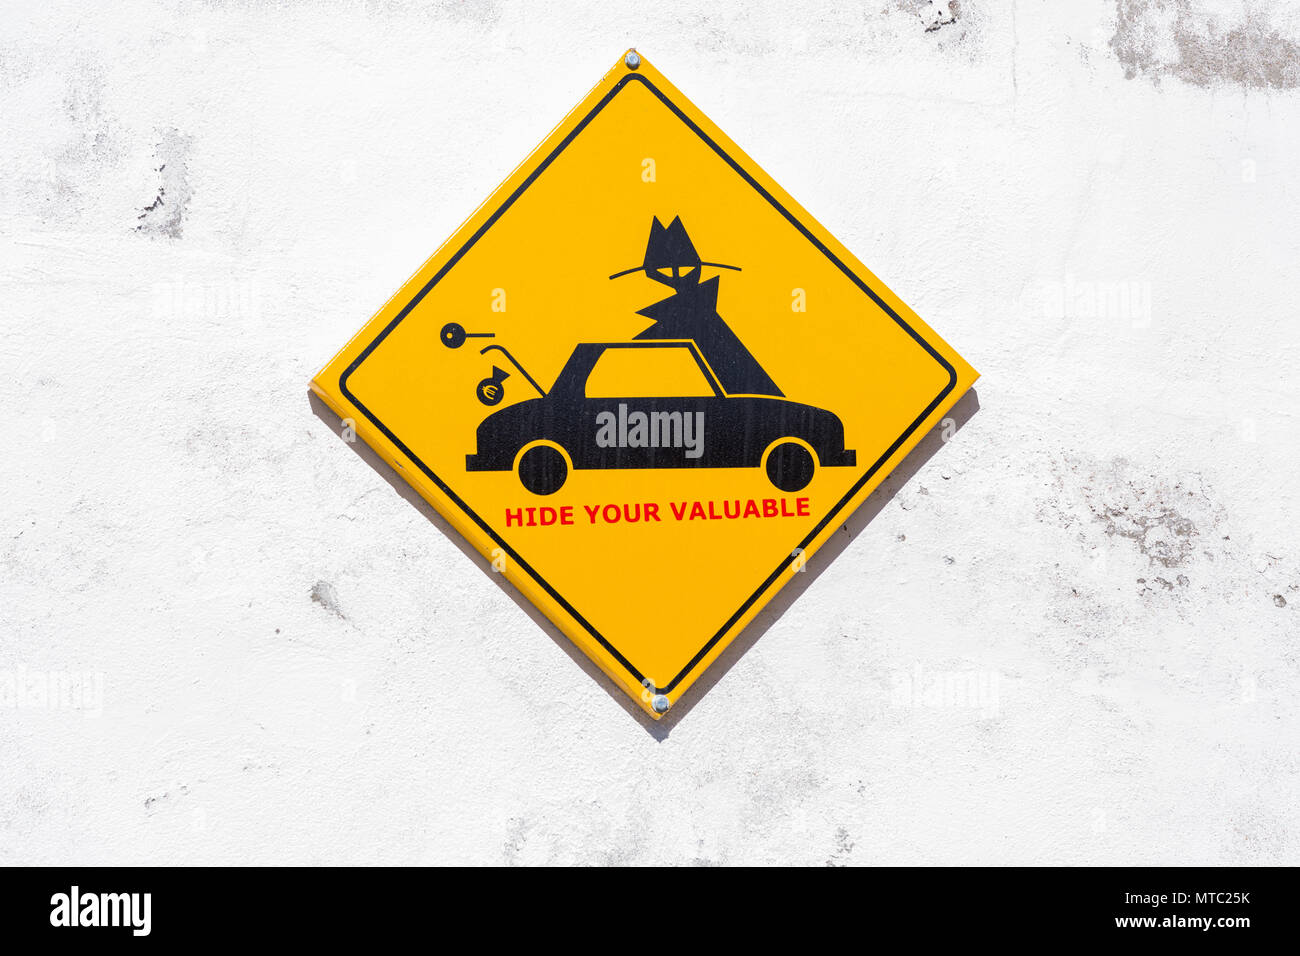 Anmelden Warnung Besucher nicht für Wertsachen auf Ansicht in ihre Autos, Vilaflor, Kanarische Inseln, Spanien, Stockfoto